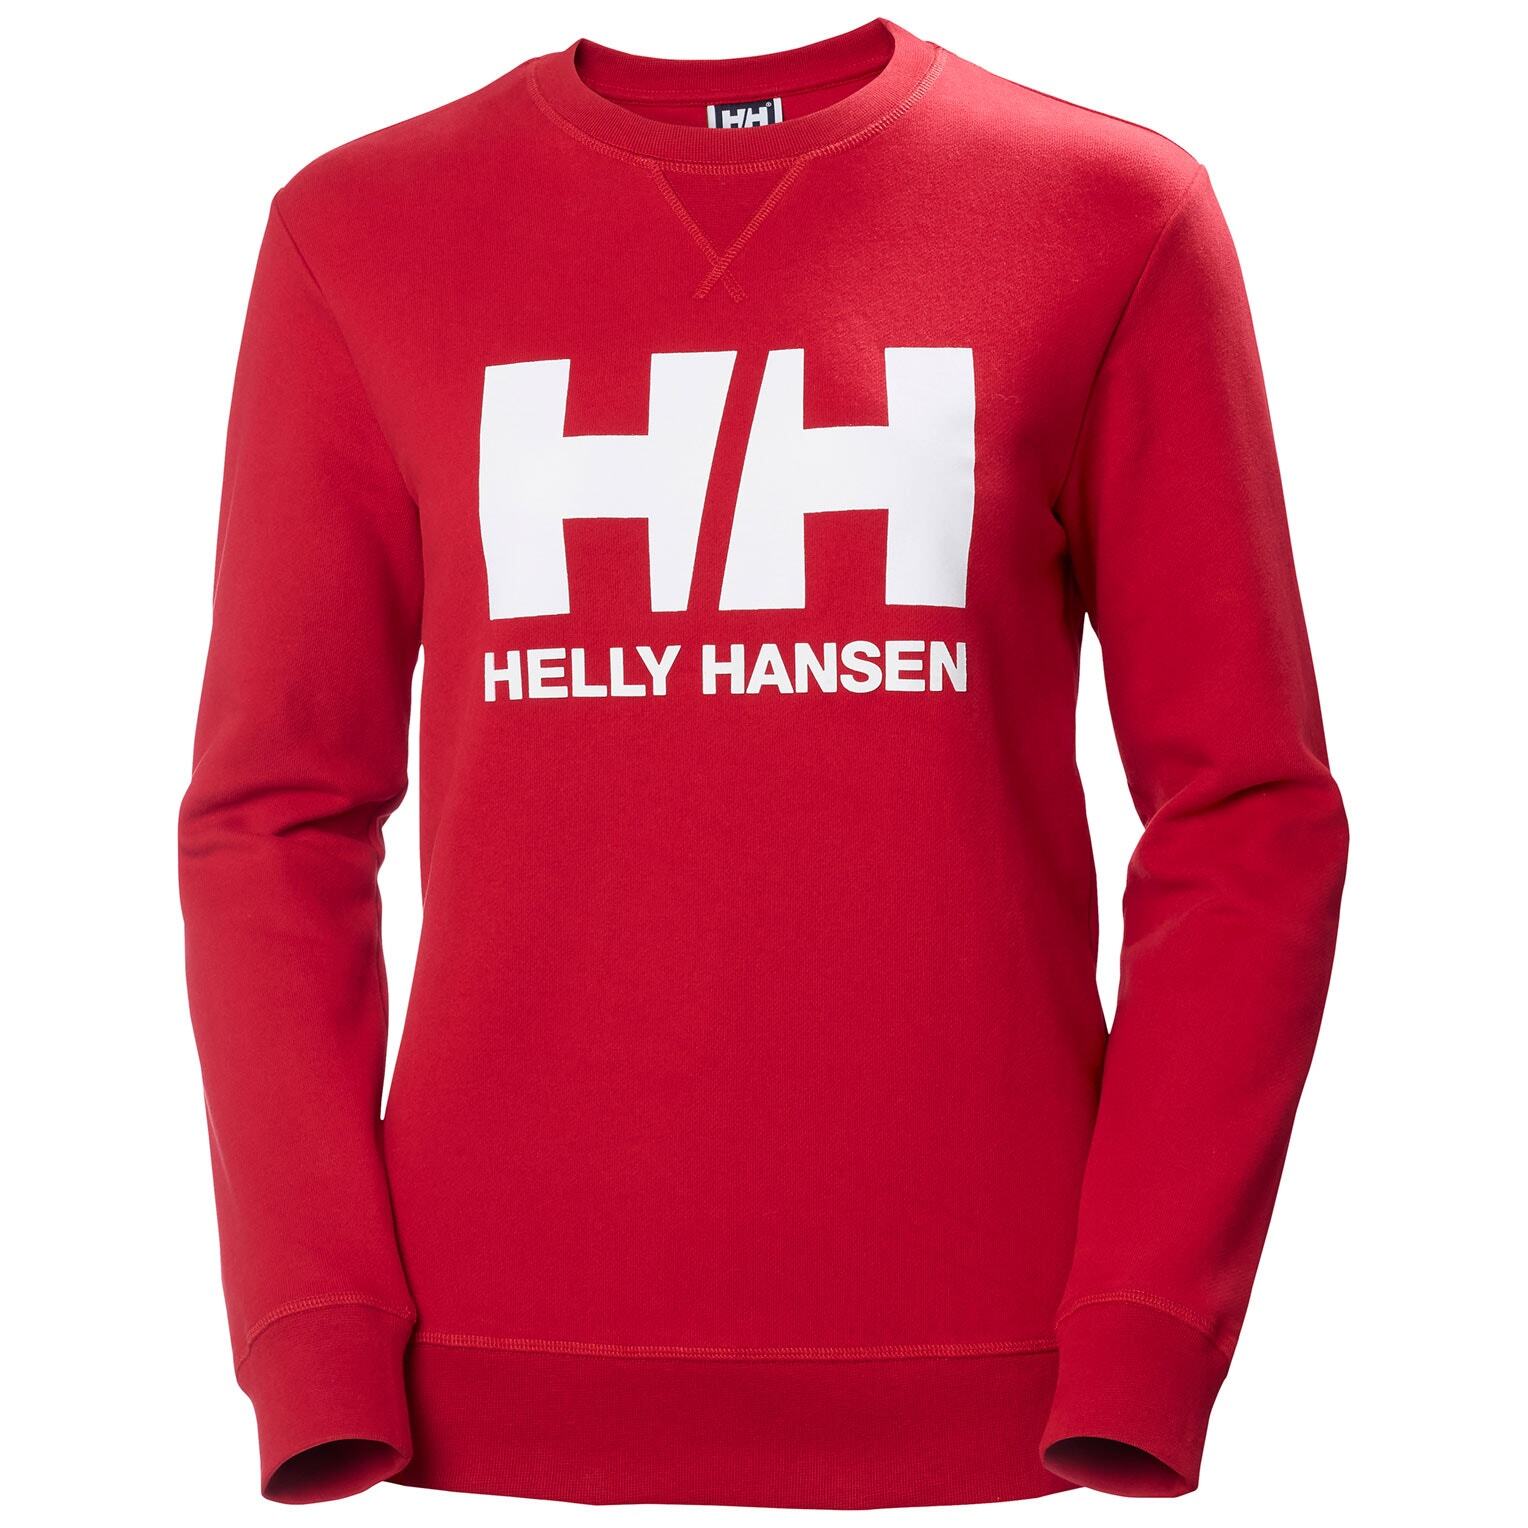 Camiseta Helly Hansen mujer multicolor logo crew sudadera